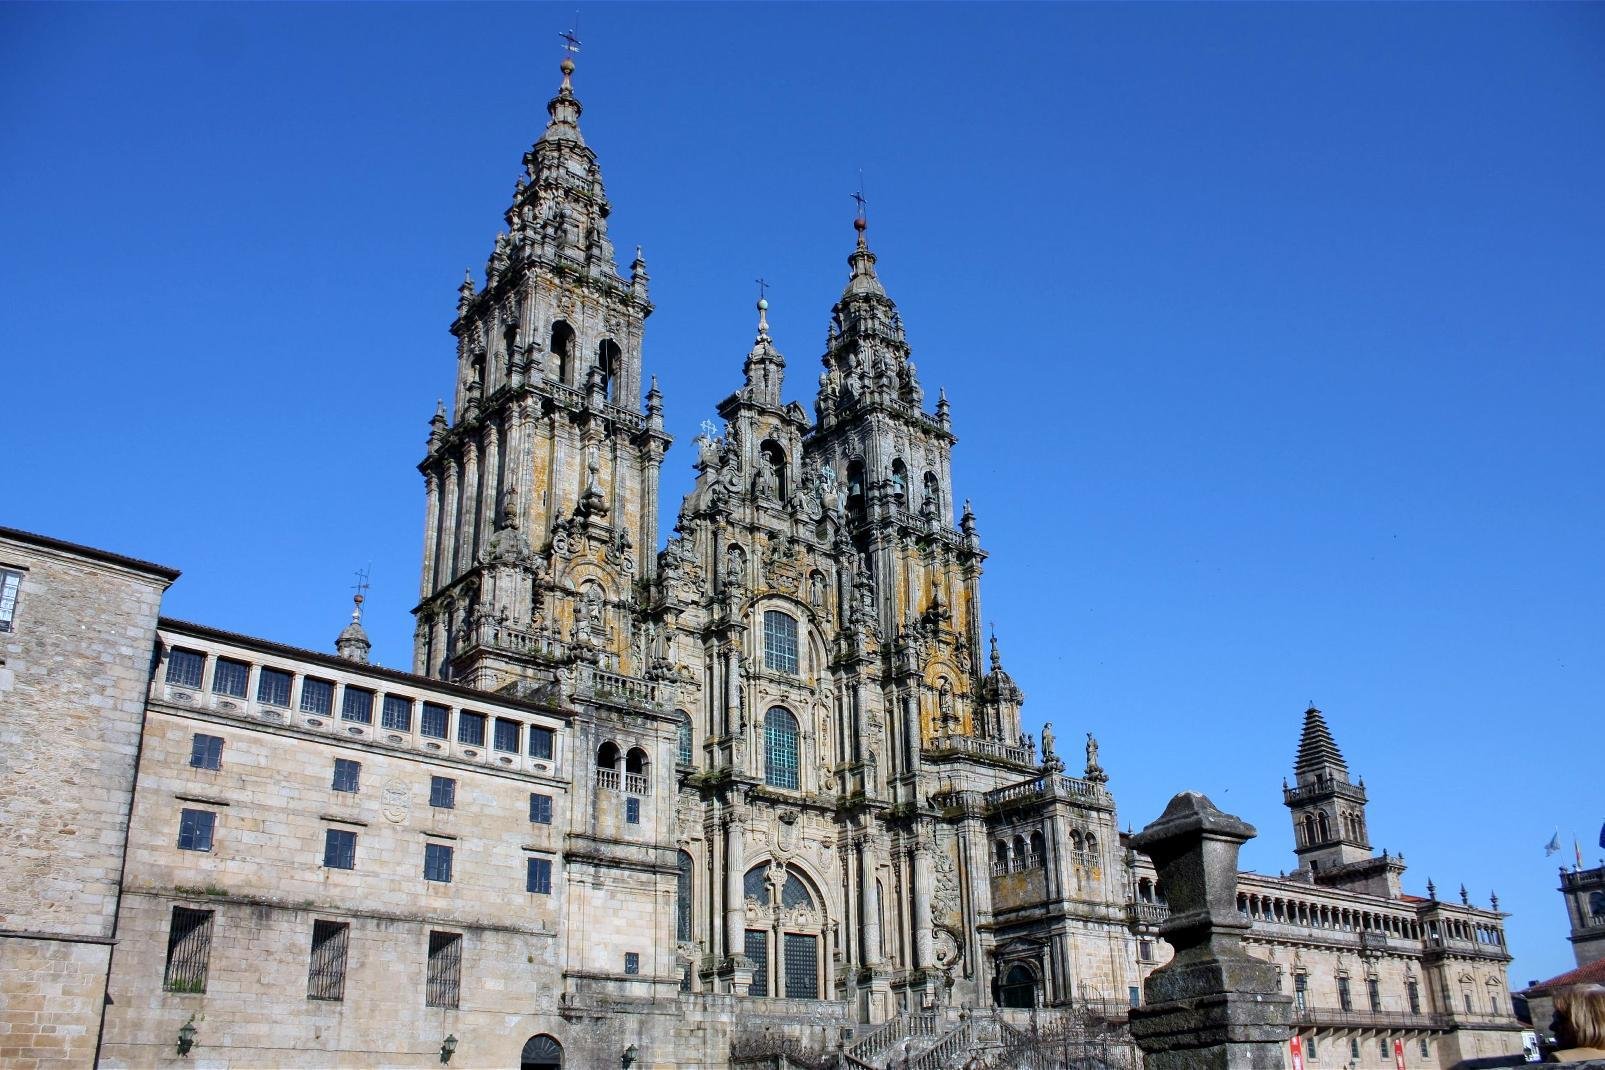 Santiago de Compostela es la capital de la Comunidad Autónoma de Galicia y pertenece a la provincia de A Coruña. Alberga unos 100 mil habitantes aproximadamente, teniendo en cuenta los censados y no censados (como estudiantes o trabajadores de otras localidades de al lado). Durante nuestro paso por la ciudad nos impresionó enormemente este lugar lleno de encanto y de historia que no deja indiferente ...